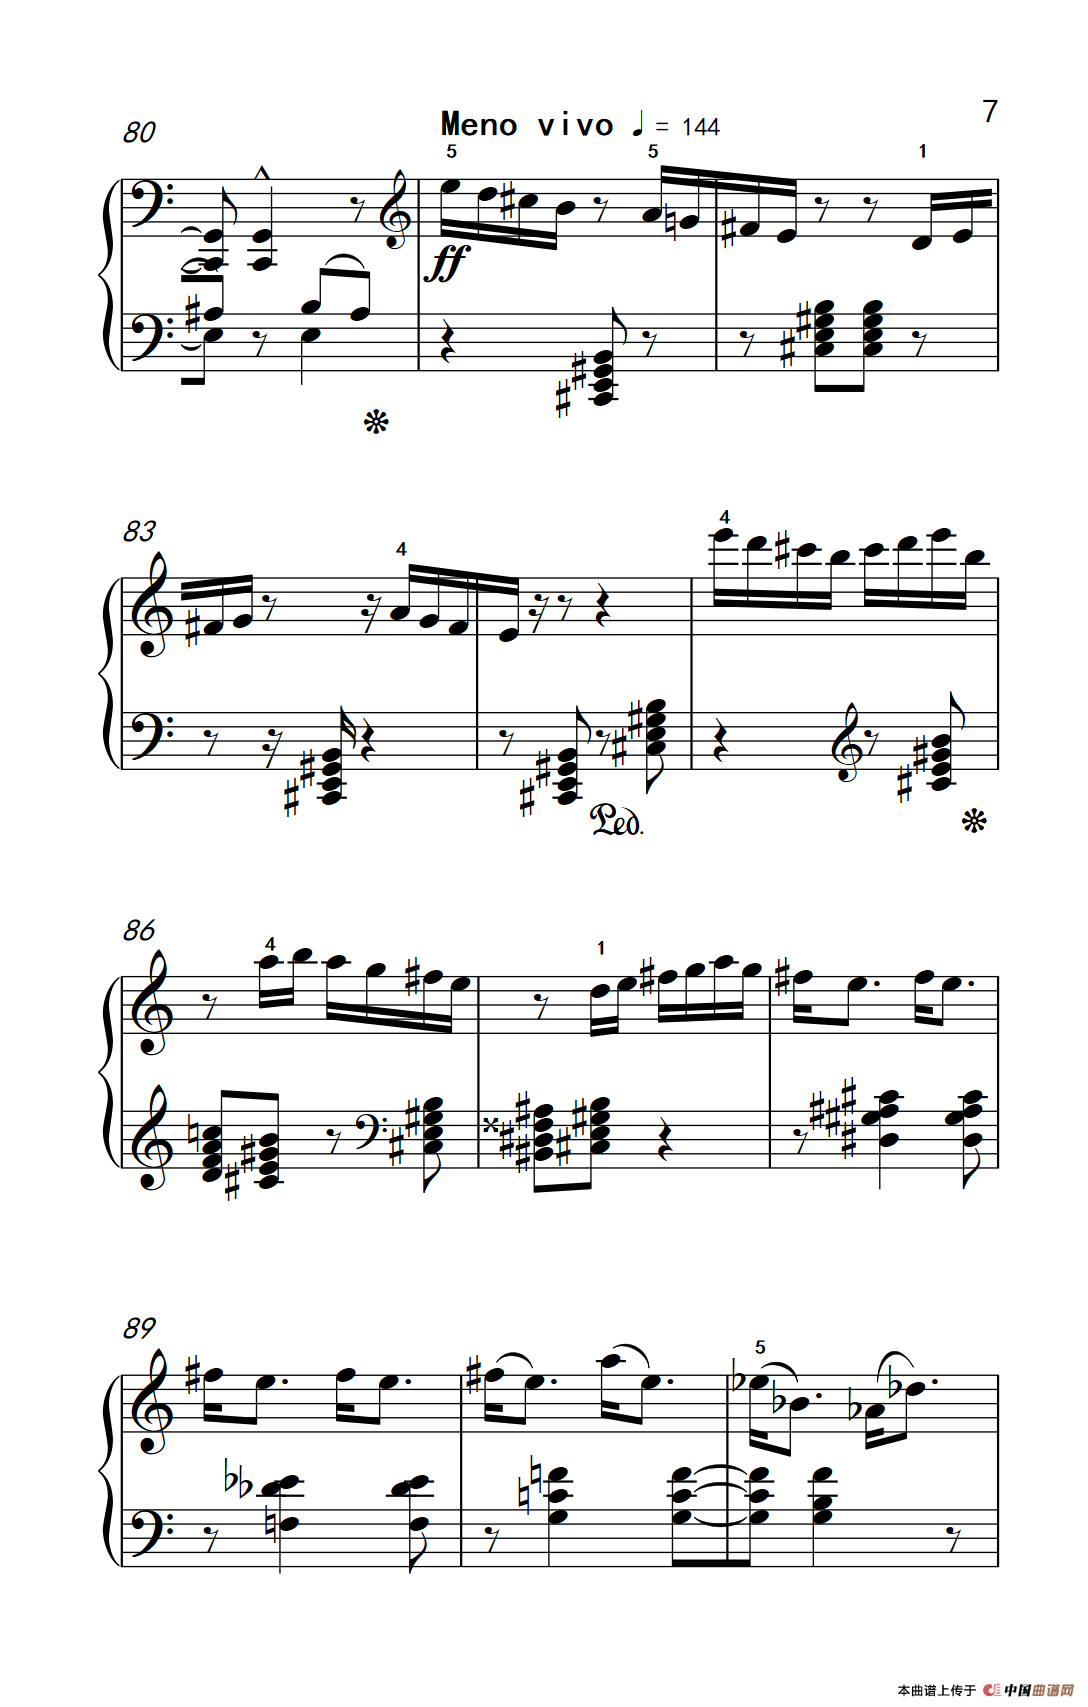 《固定低音》钢琴曲谱图分享